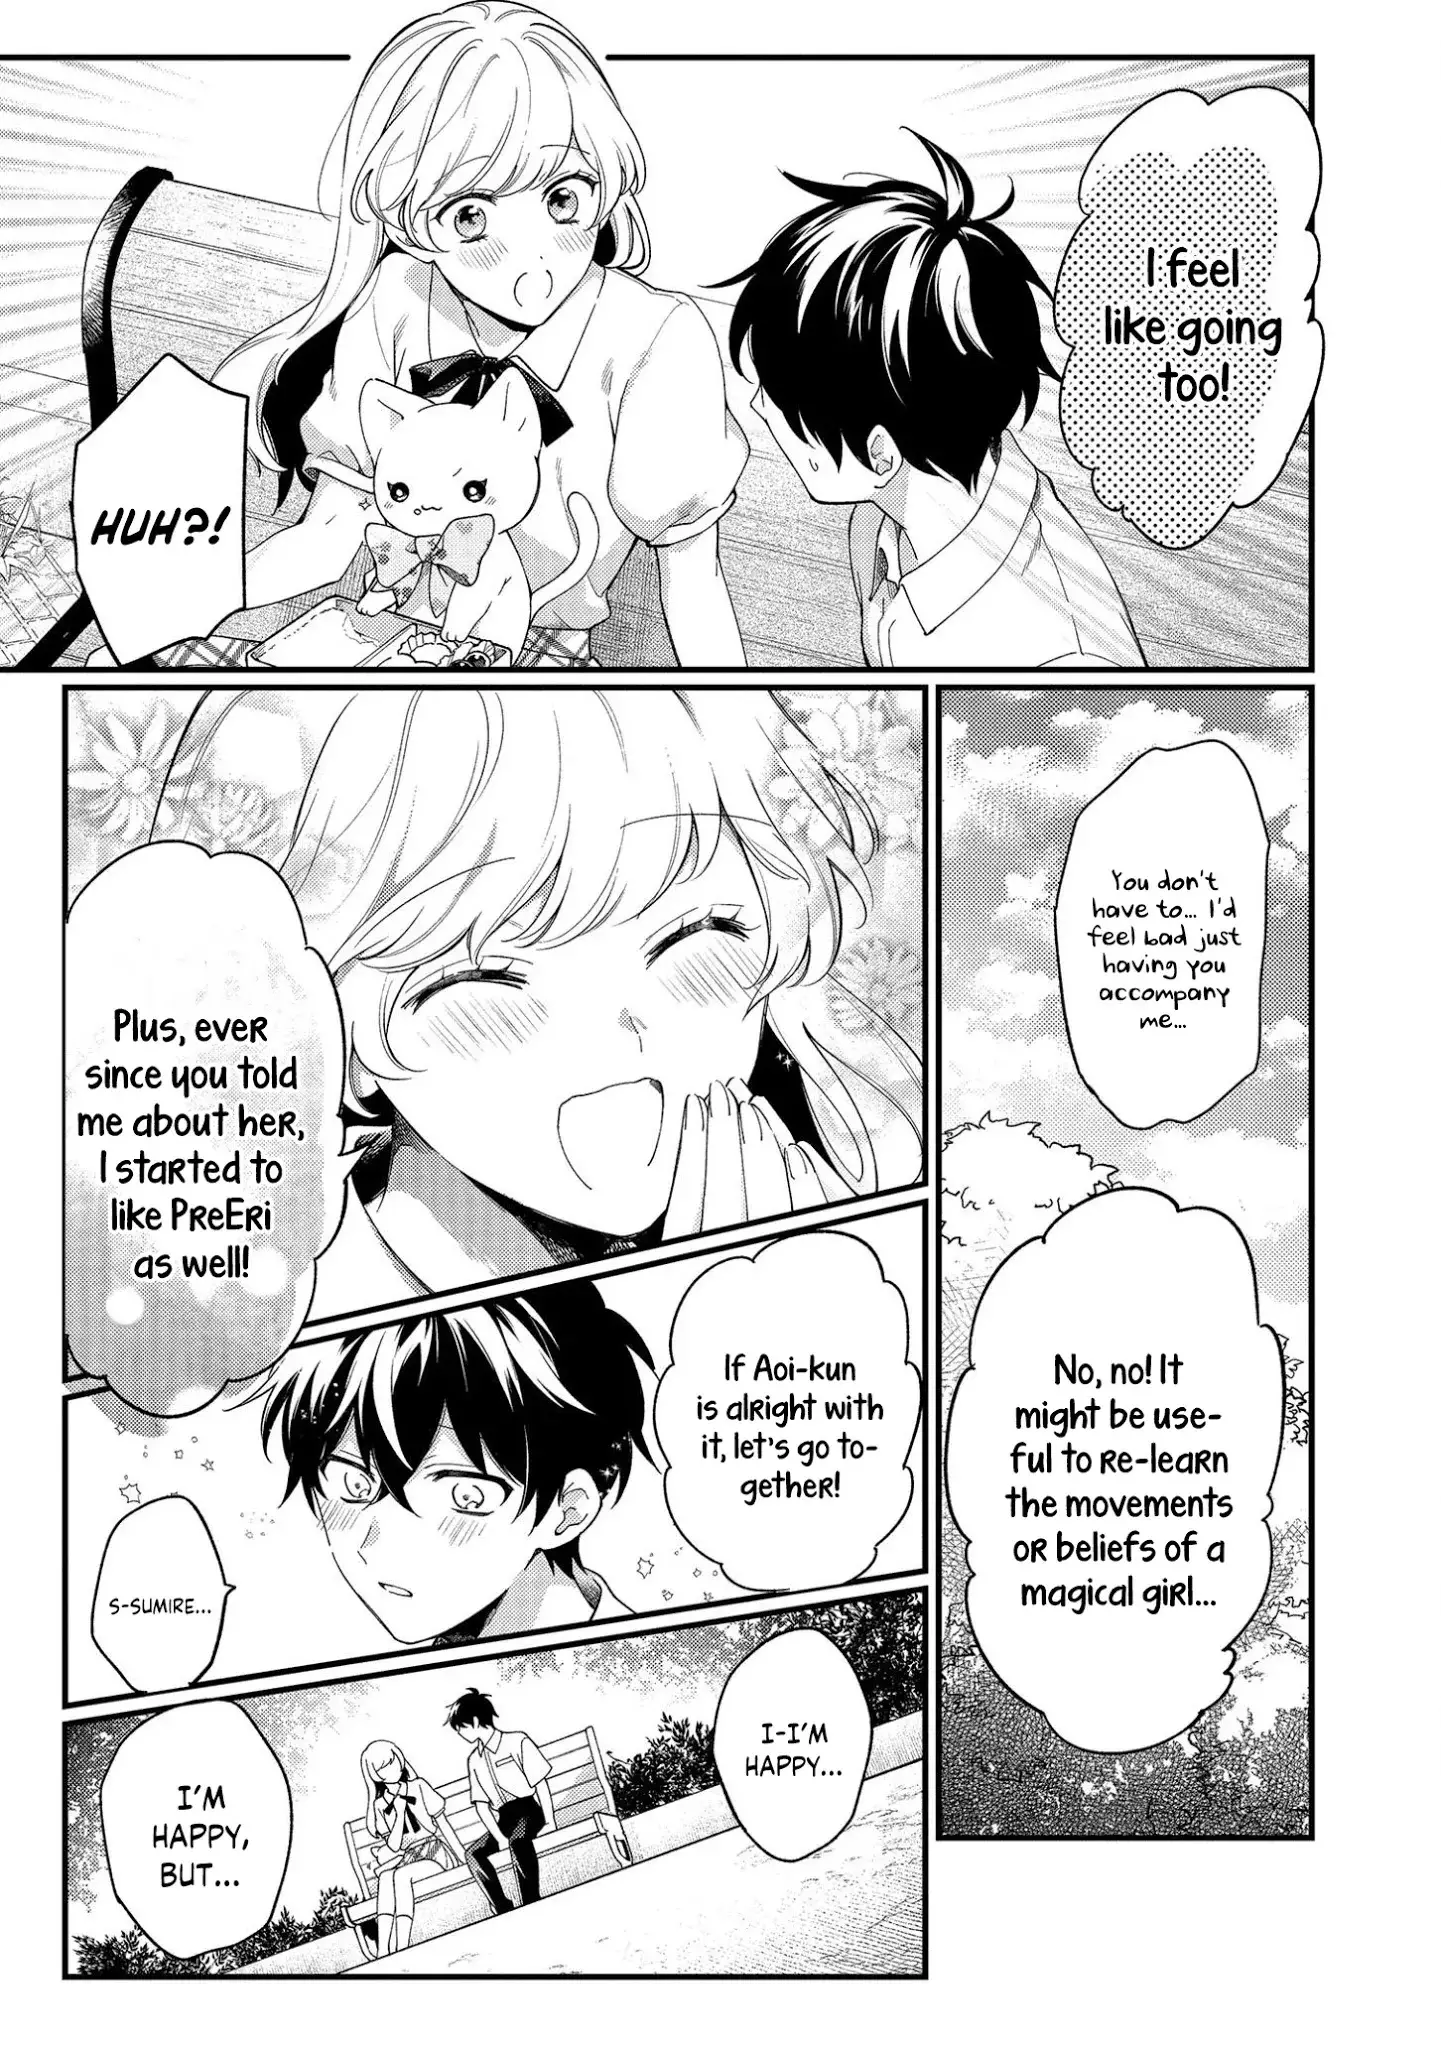 No Match For Aoi-Kun - 4 page 7